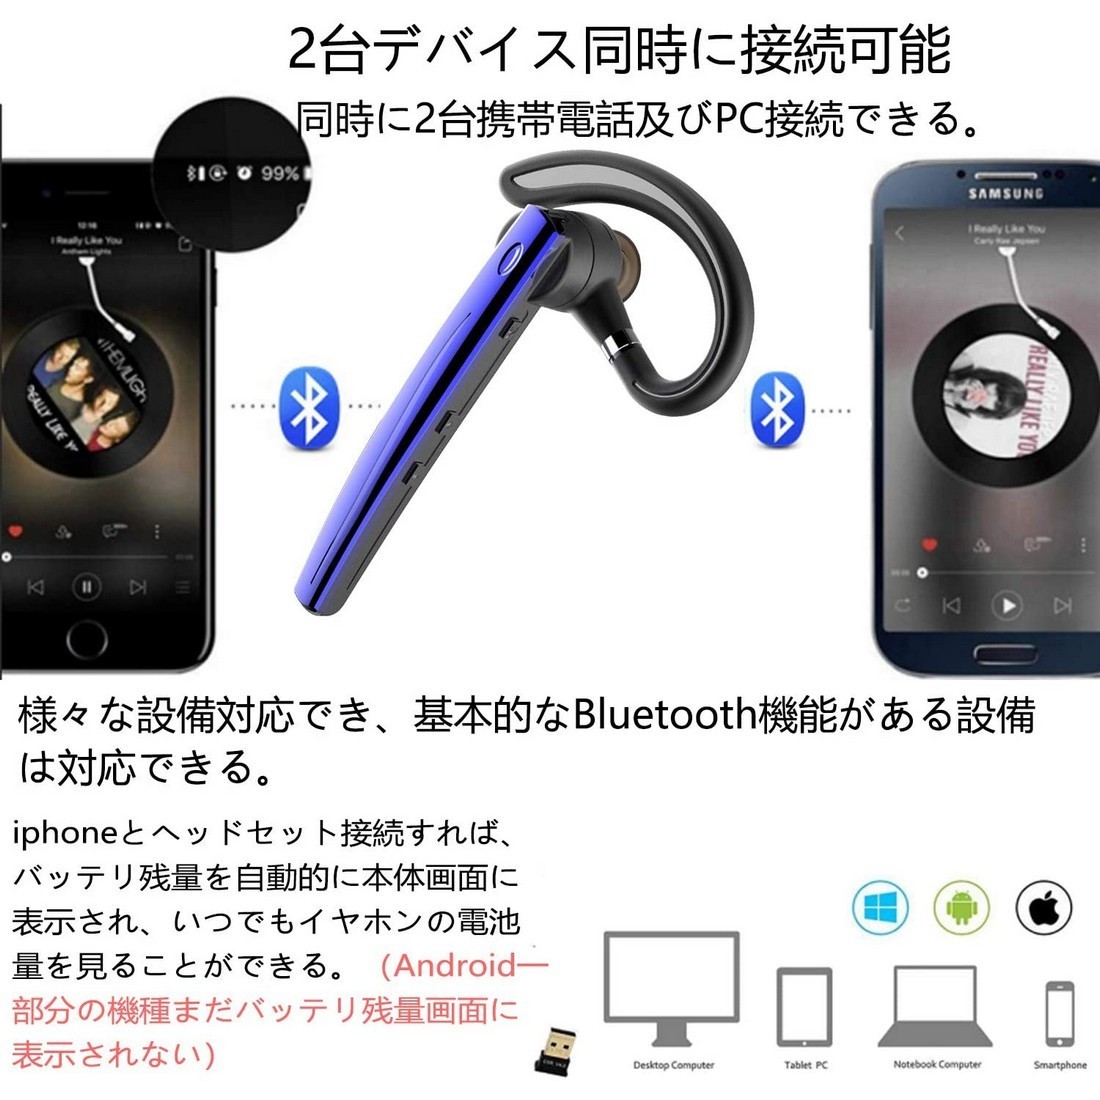 Bluetooth headset 5.0 беспроводной Bluetooth headset высококачественный звук одна сторона уголок встроенный Mike Bluetooth слуховай аппарат "свободные руки" телефонный разговор 